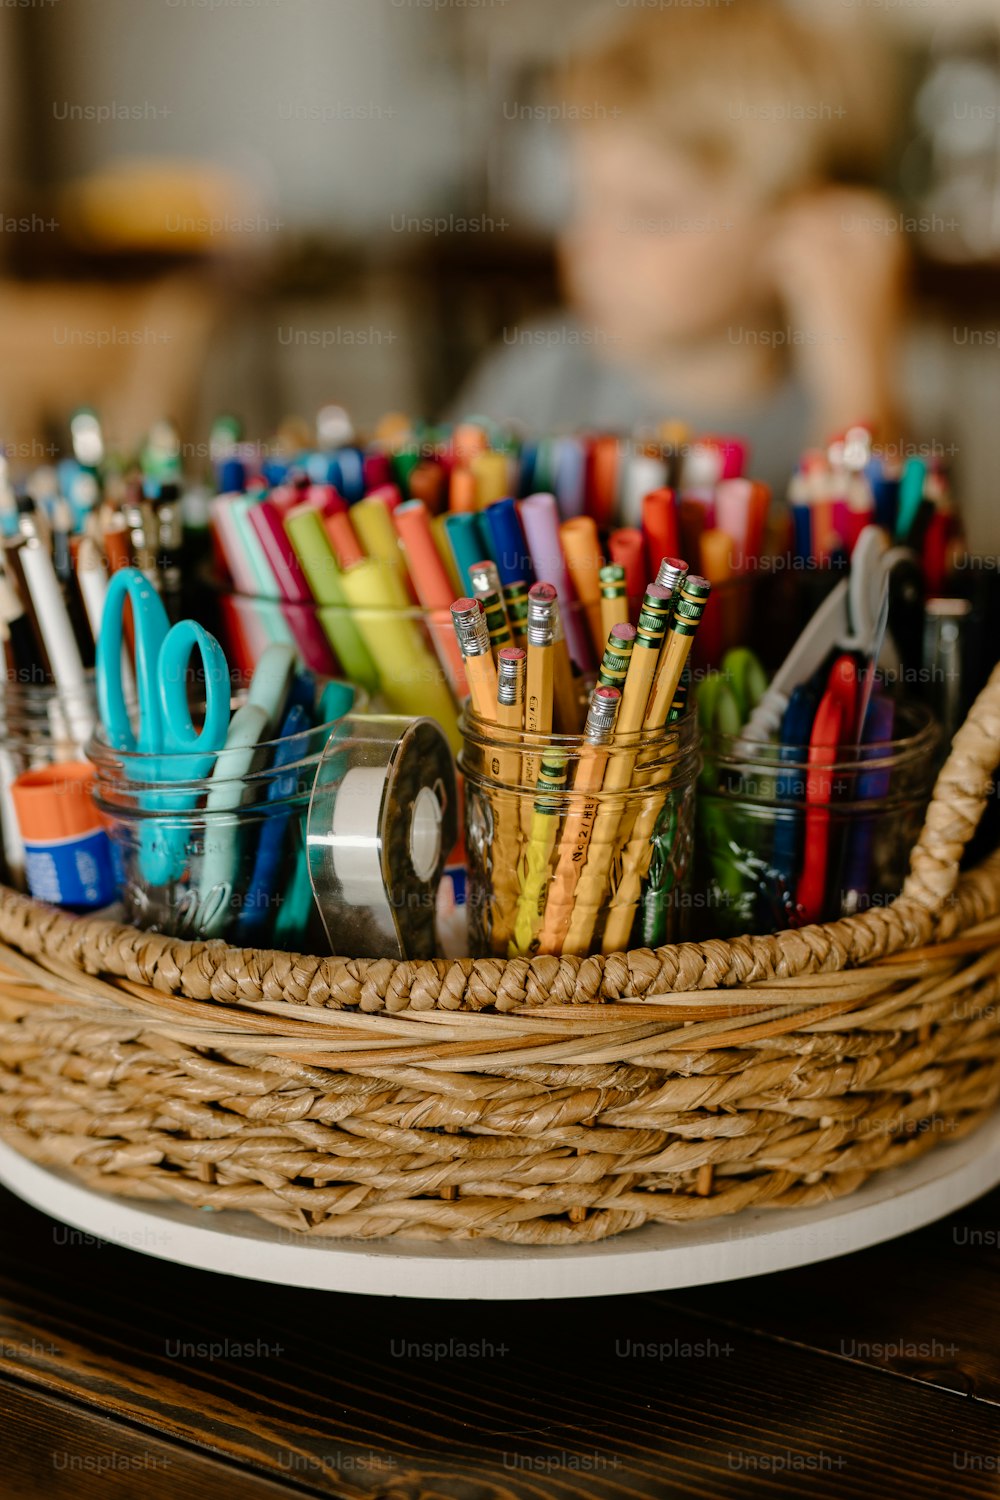 Un panier rempli de nombreux stylos et ciseaux de différentes couleurs